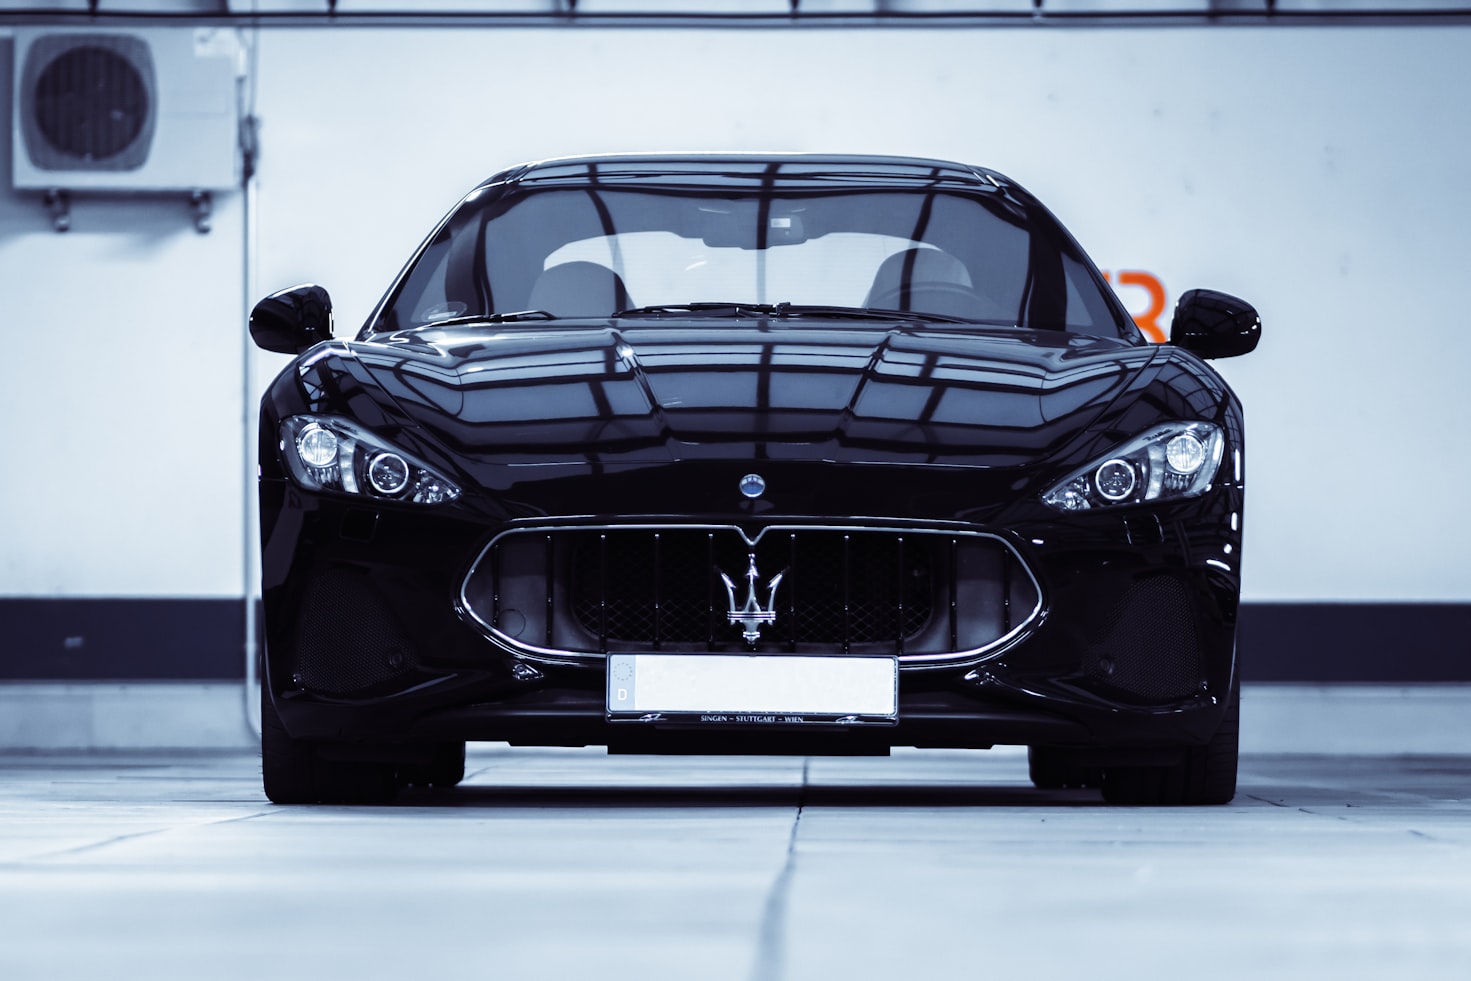 Do Maseratis hold value? Maserati Buying Advice